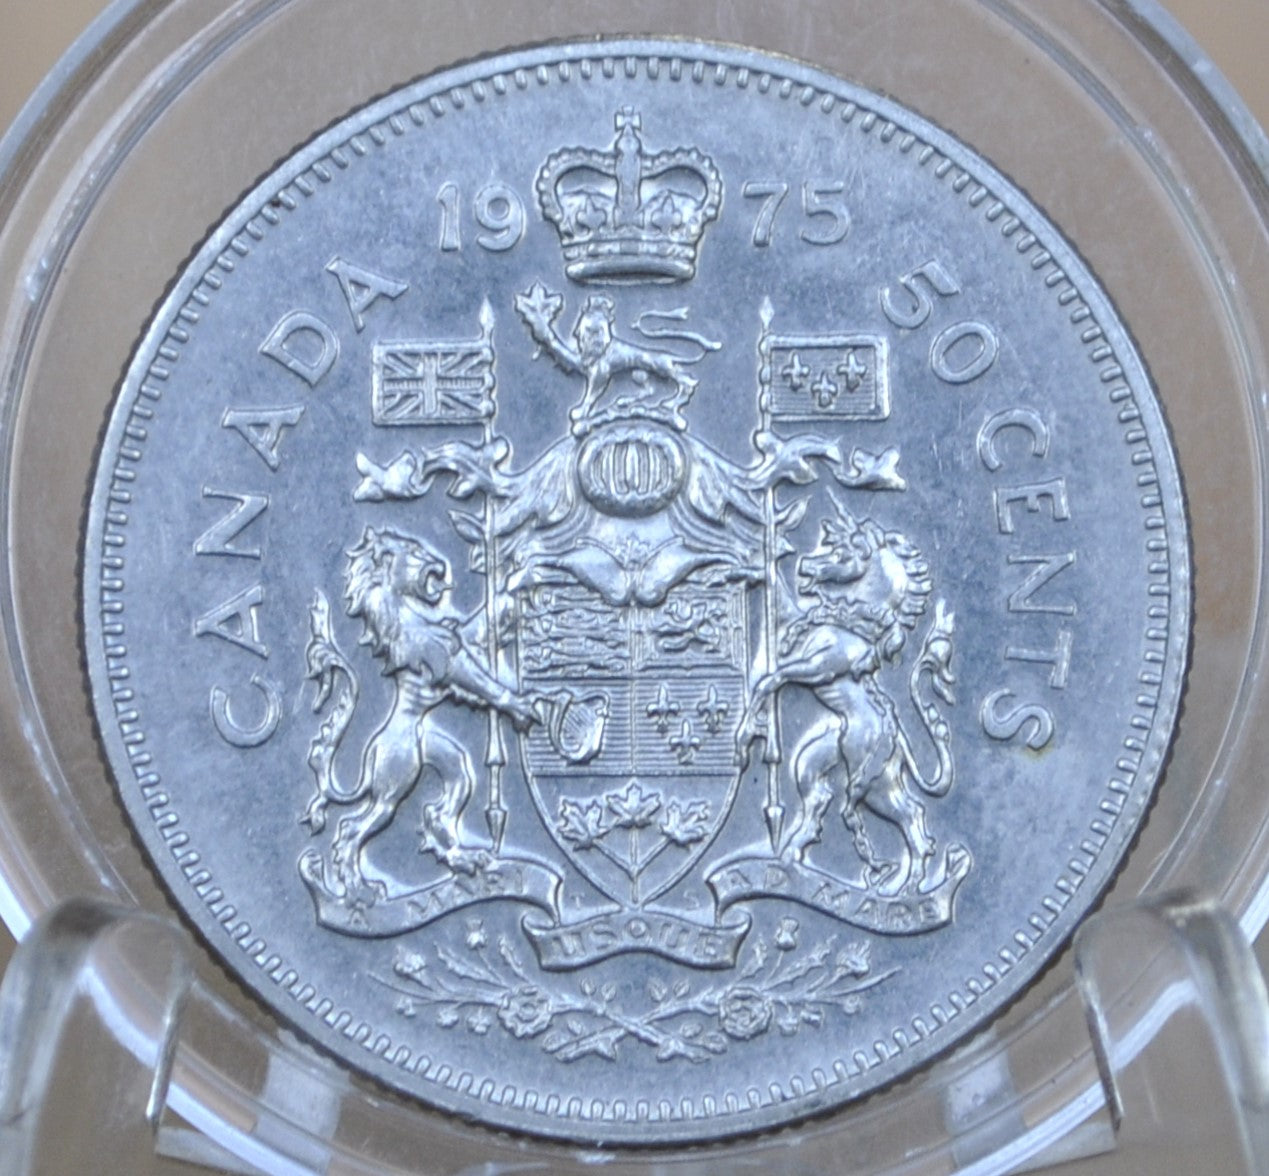 1975 Canadian Half Dollar - AU/BU (About Unc.) - Clad - 50 Cent Canada 1975